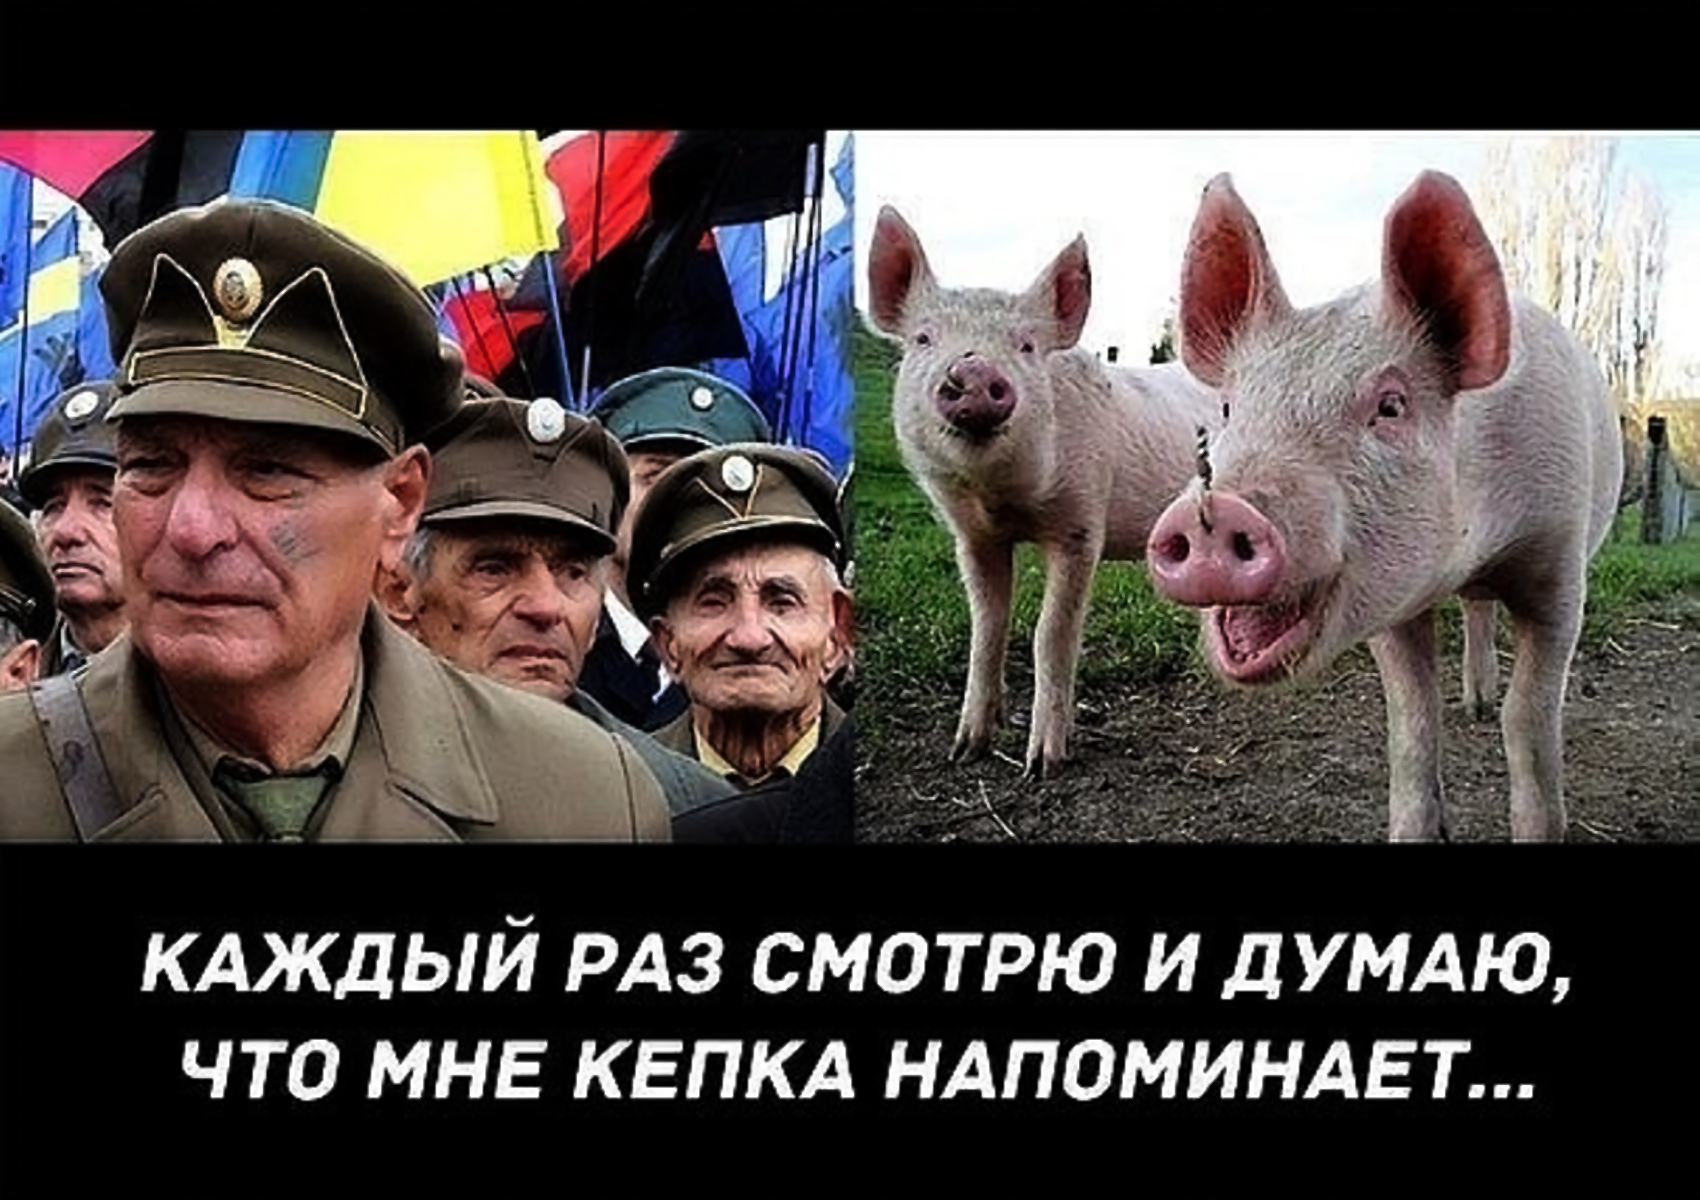 Хохлы про крокус. Приколы про Хохлов. Украинские войска свиньи.